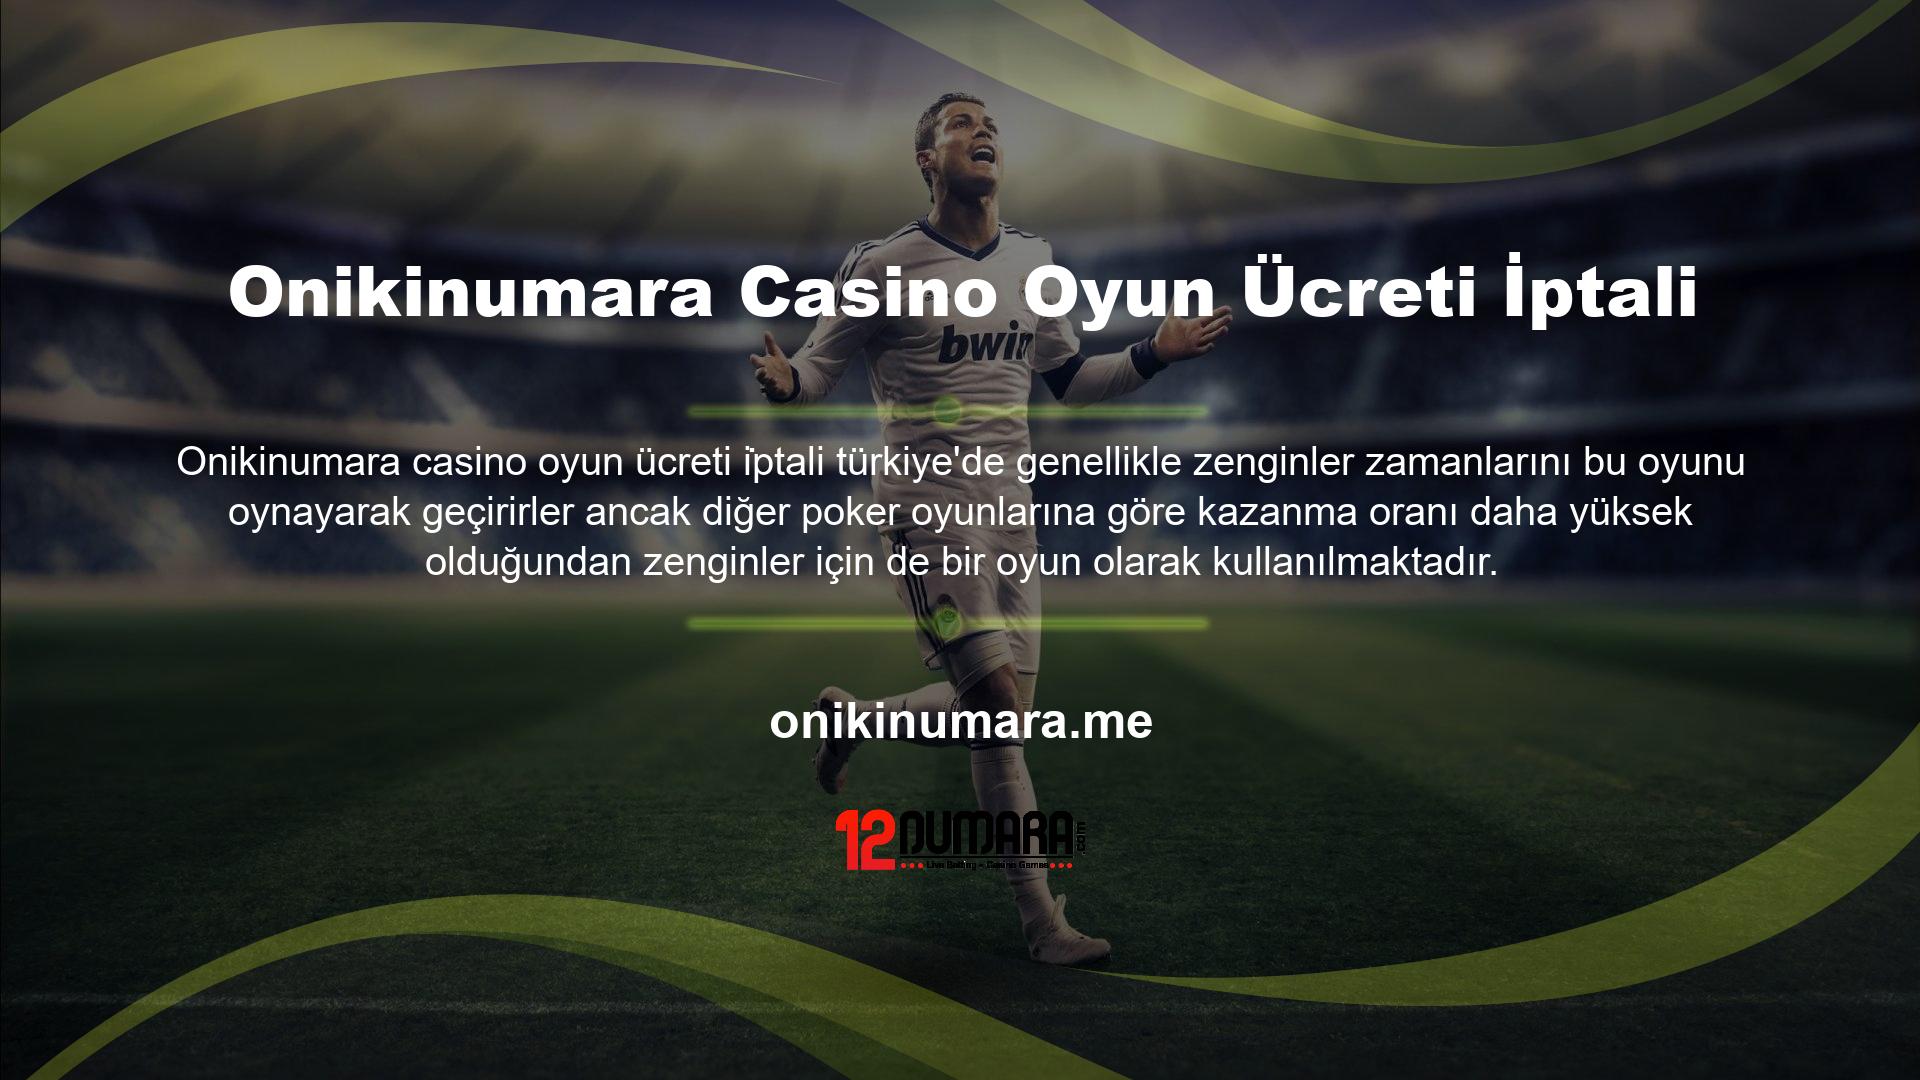 Onikinumara yeni casino oyun ücreti iptali ana sayfası, oyunun kuralları bu kadar karmaşık ve ayrıntılı olmadığı için oyuna farklı bir bakış açısı getiriyor